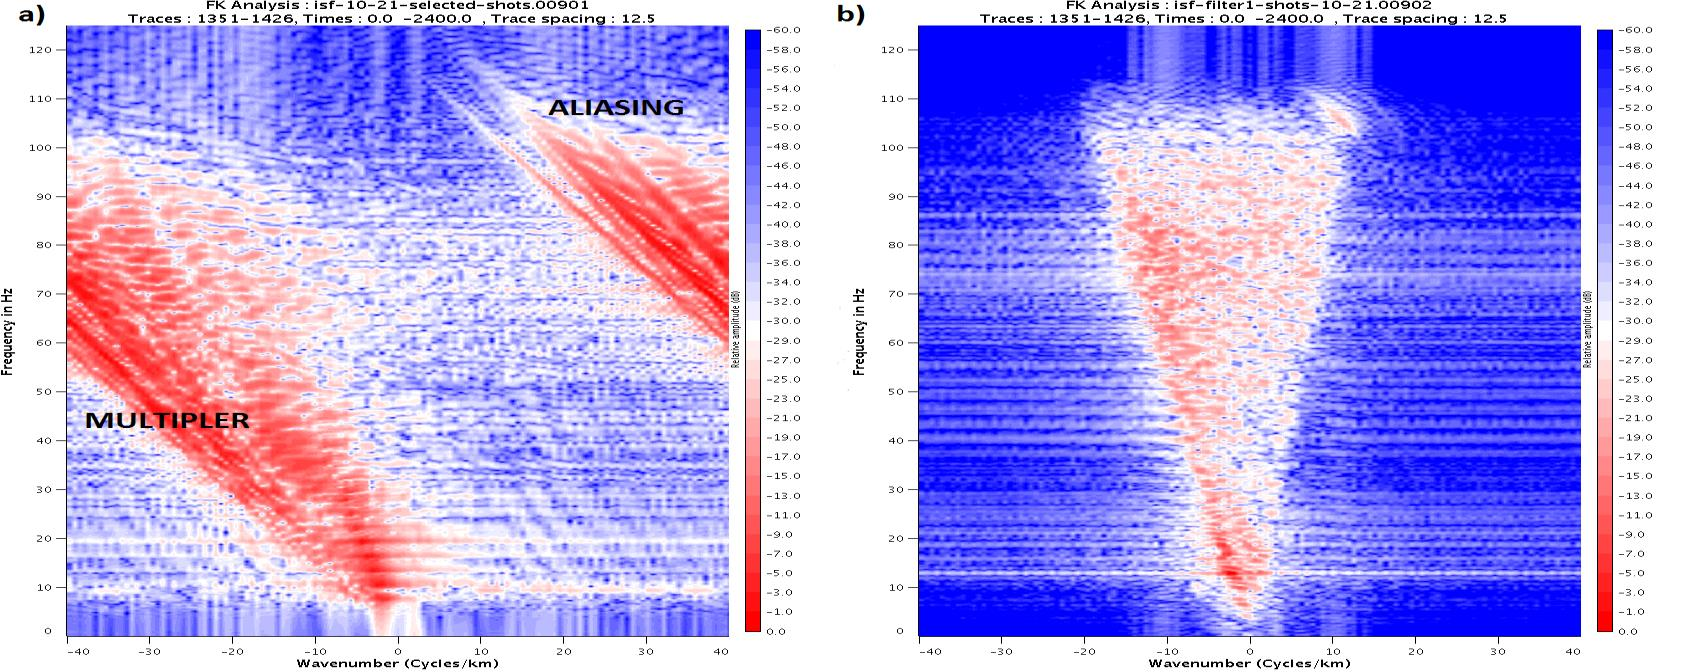 Fig. 5.4: FK analyse. Frekvens i Hz er angitt på y- aksen, og bølgetall i cycles/km på x-aksen. a) viser plott før fk filter har blitt påført.